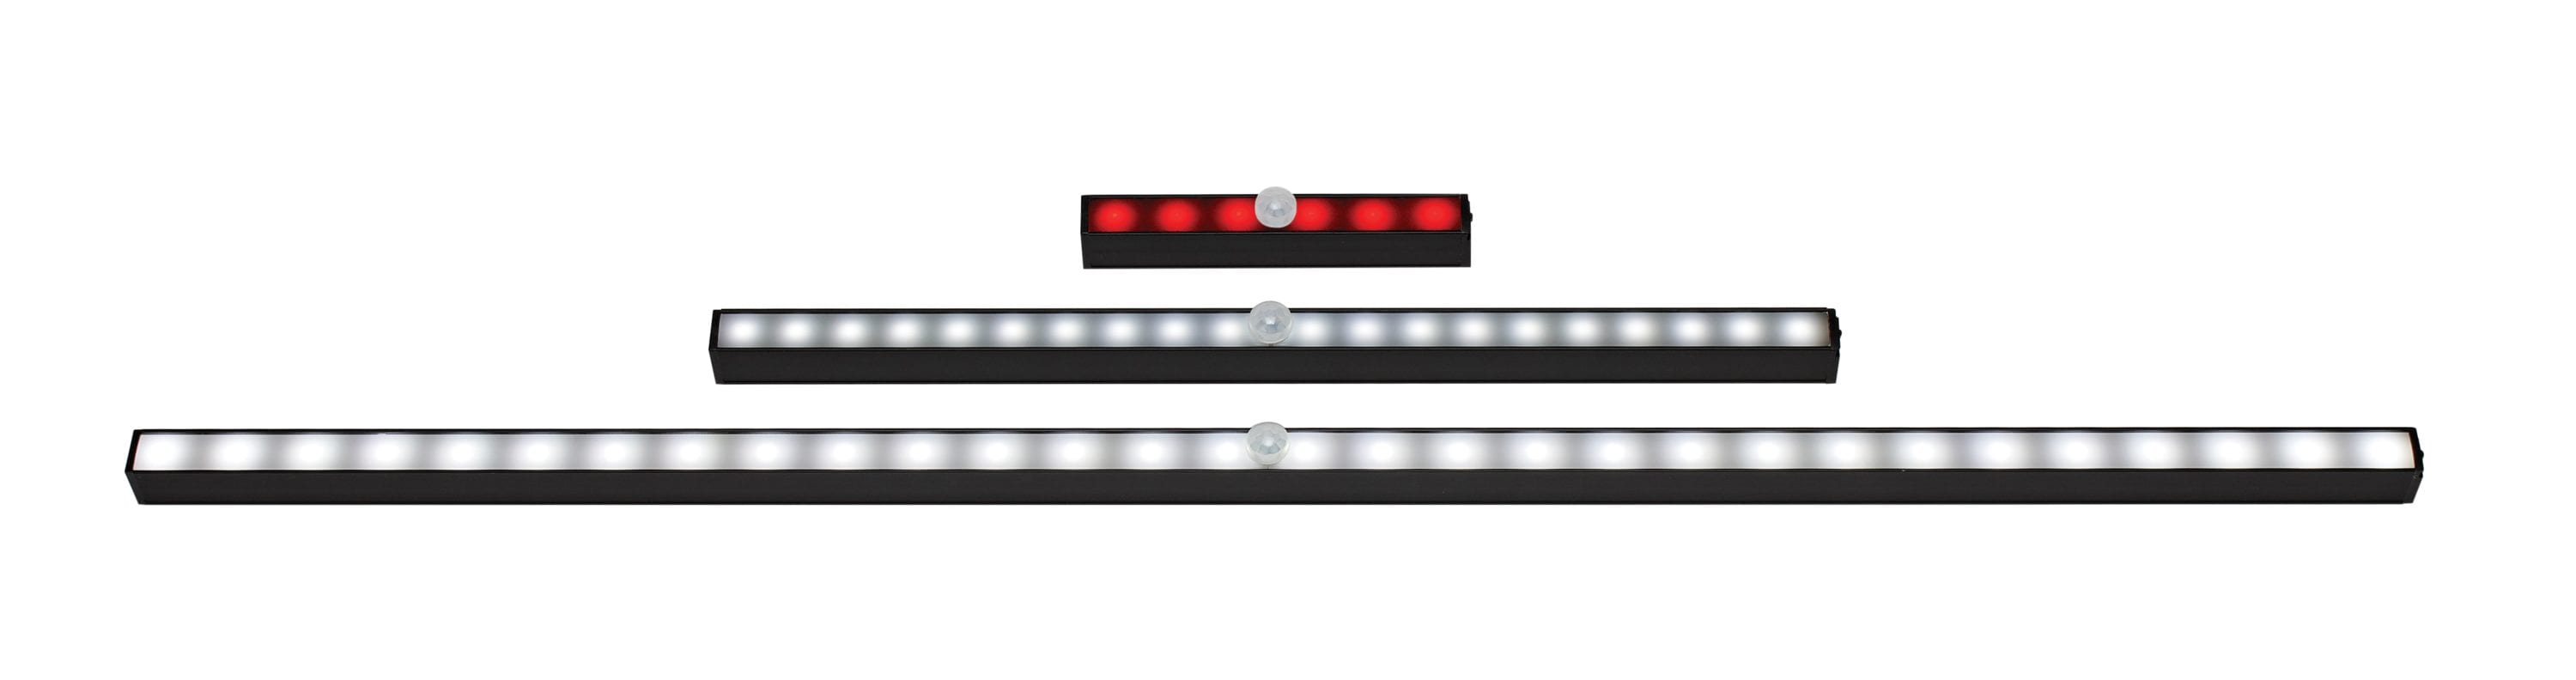 Surelock LED Safe Light Kit - Lock It Up Safes